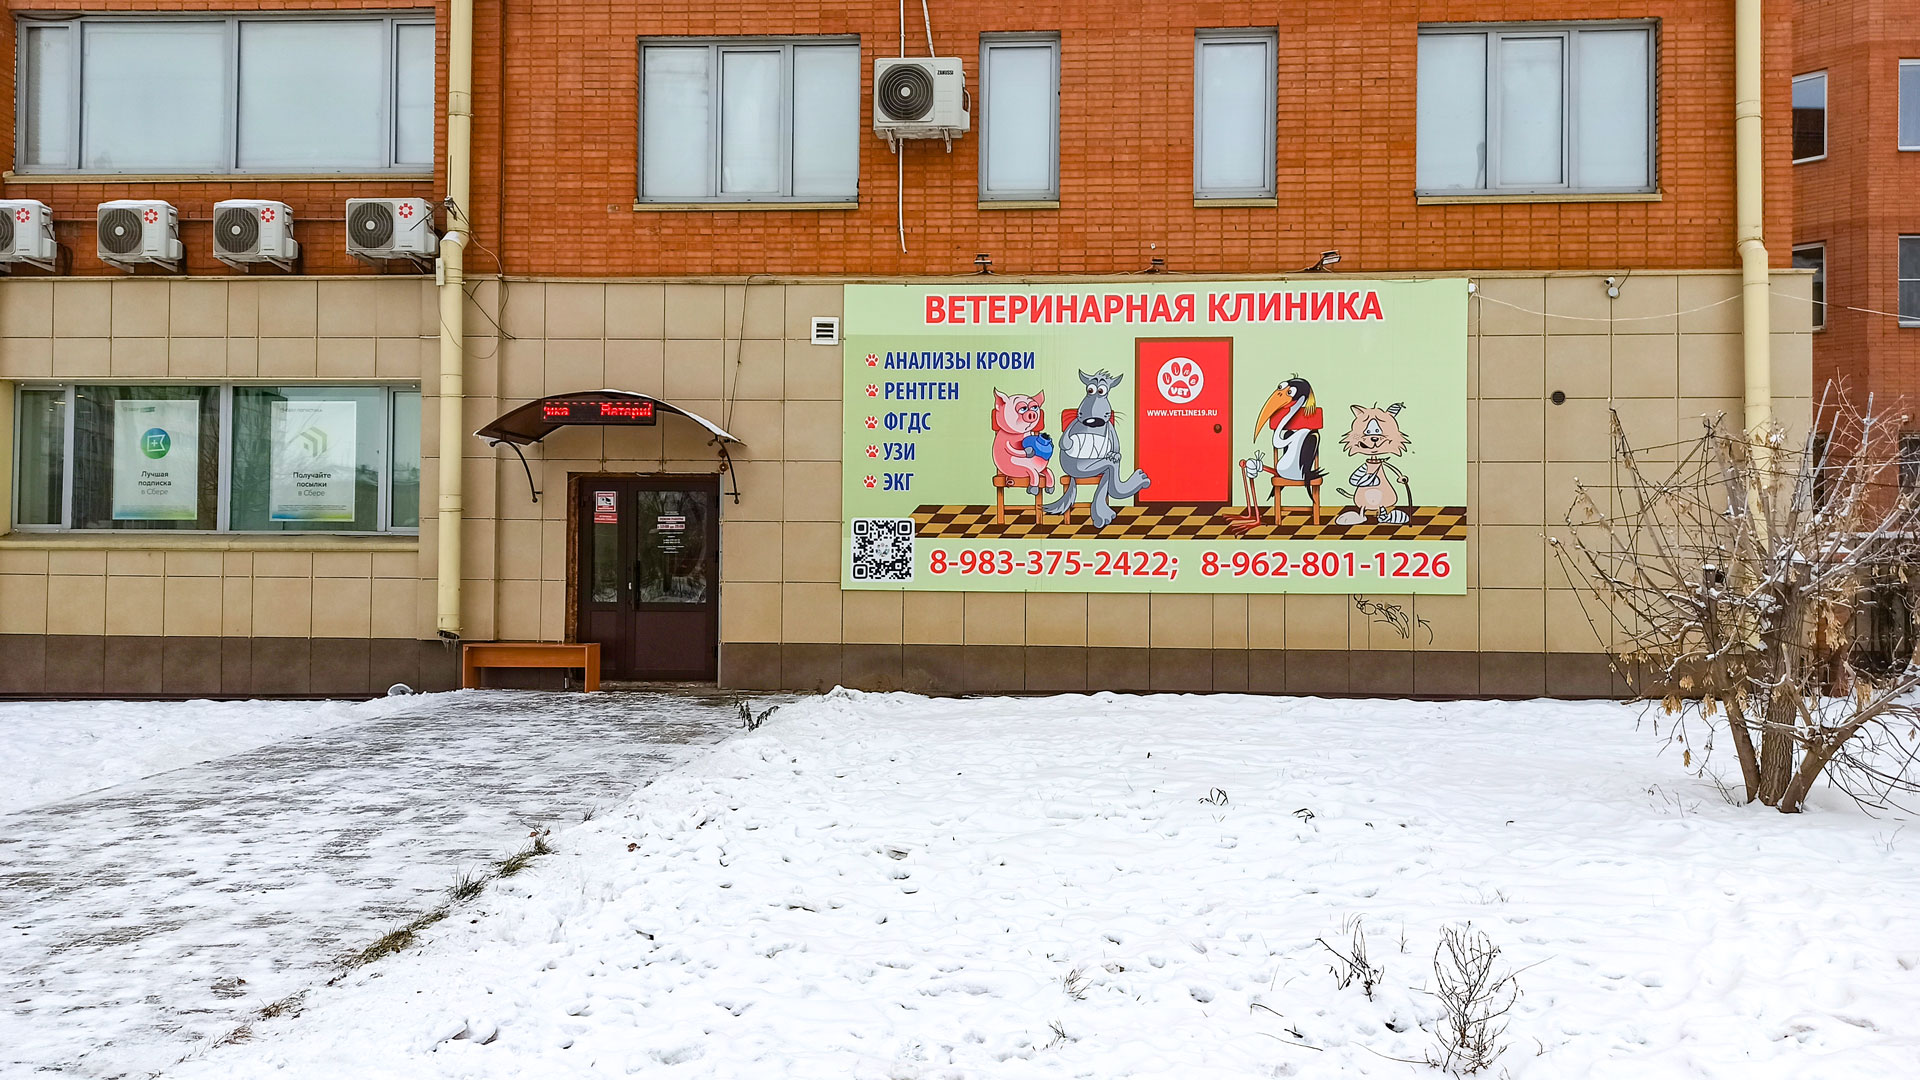 Клиника скорой ветеринарной помощи Vet line г. Черногорск.